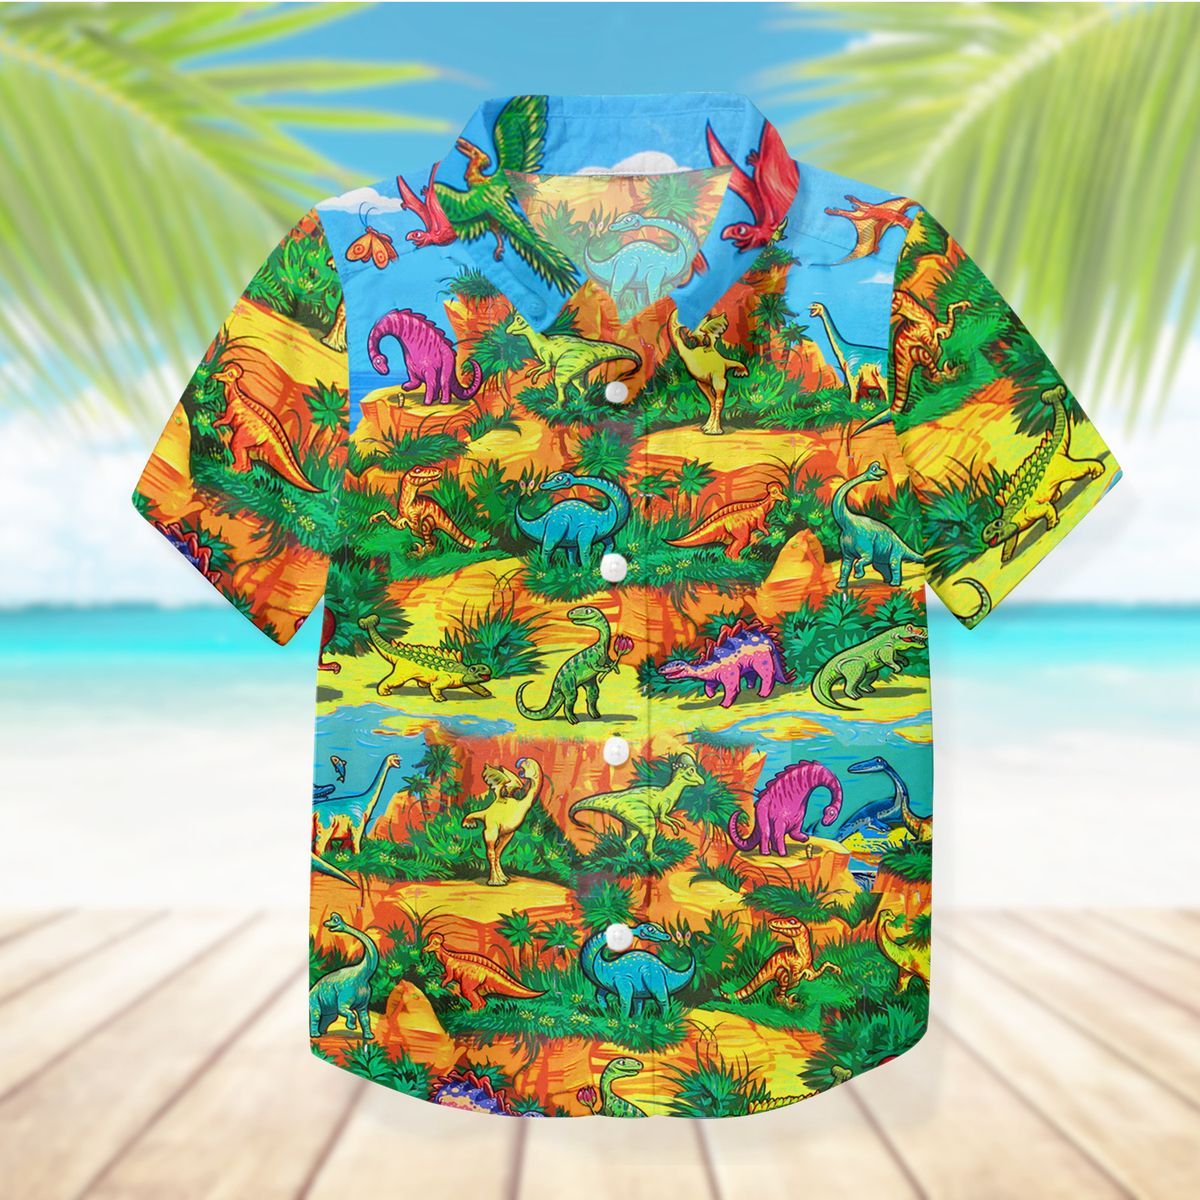 Gearhuman 3D Dinosaur Kid Hawaii Shirt ZZ07072175 Kid Hawaii Shirt 